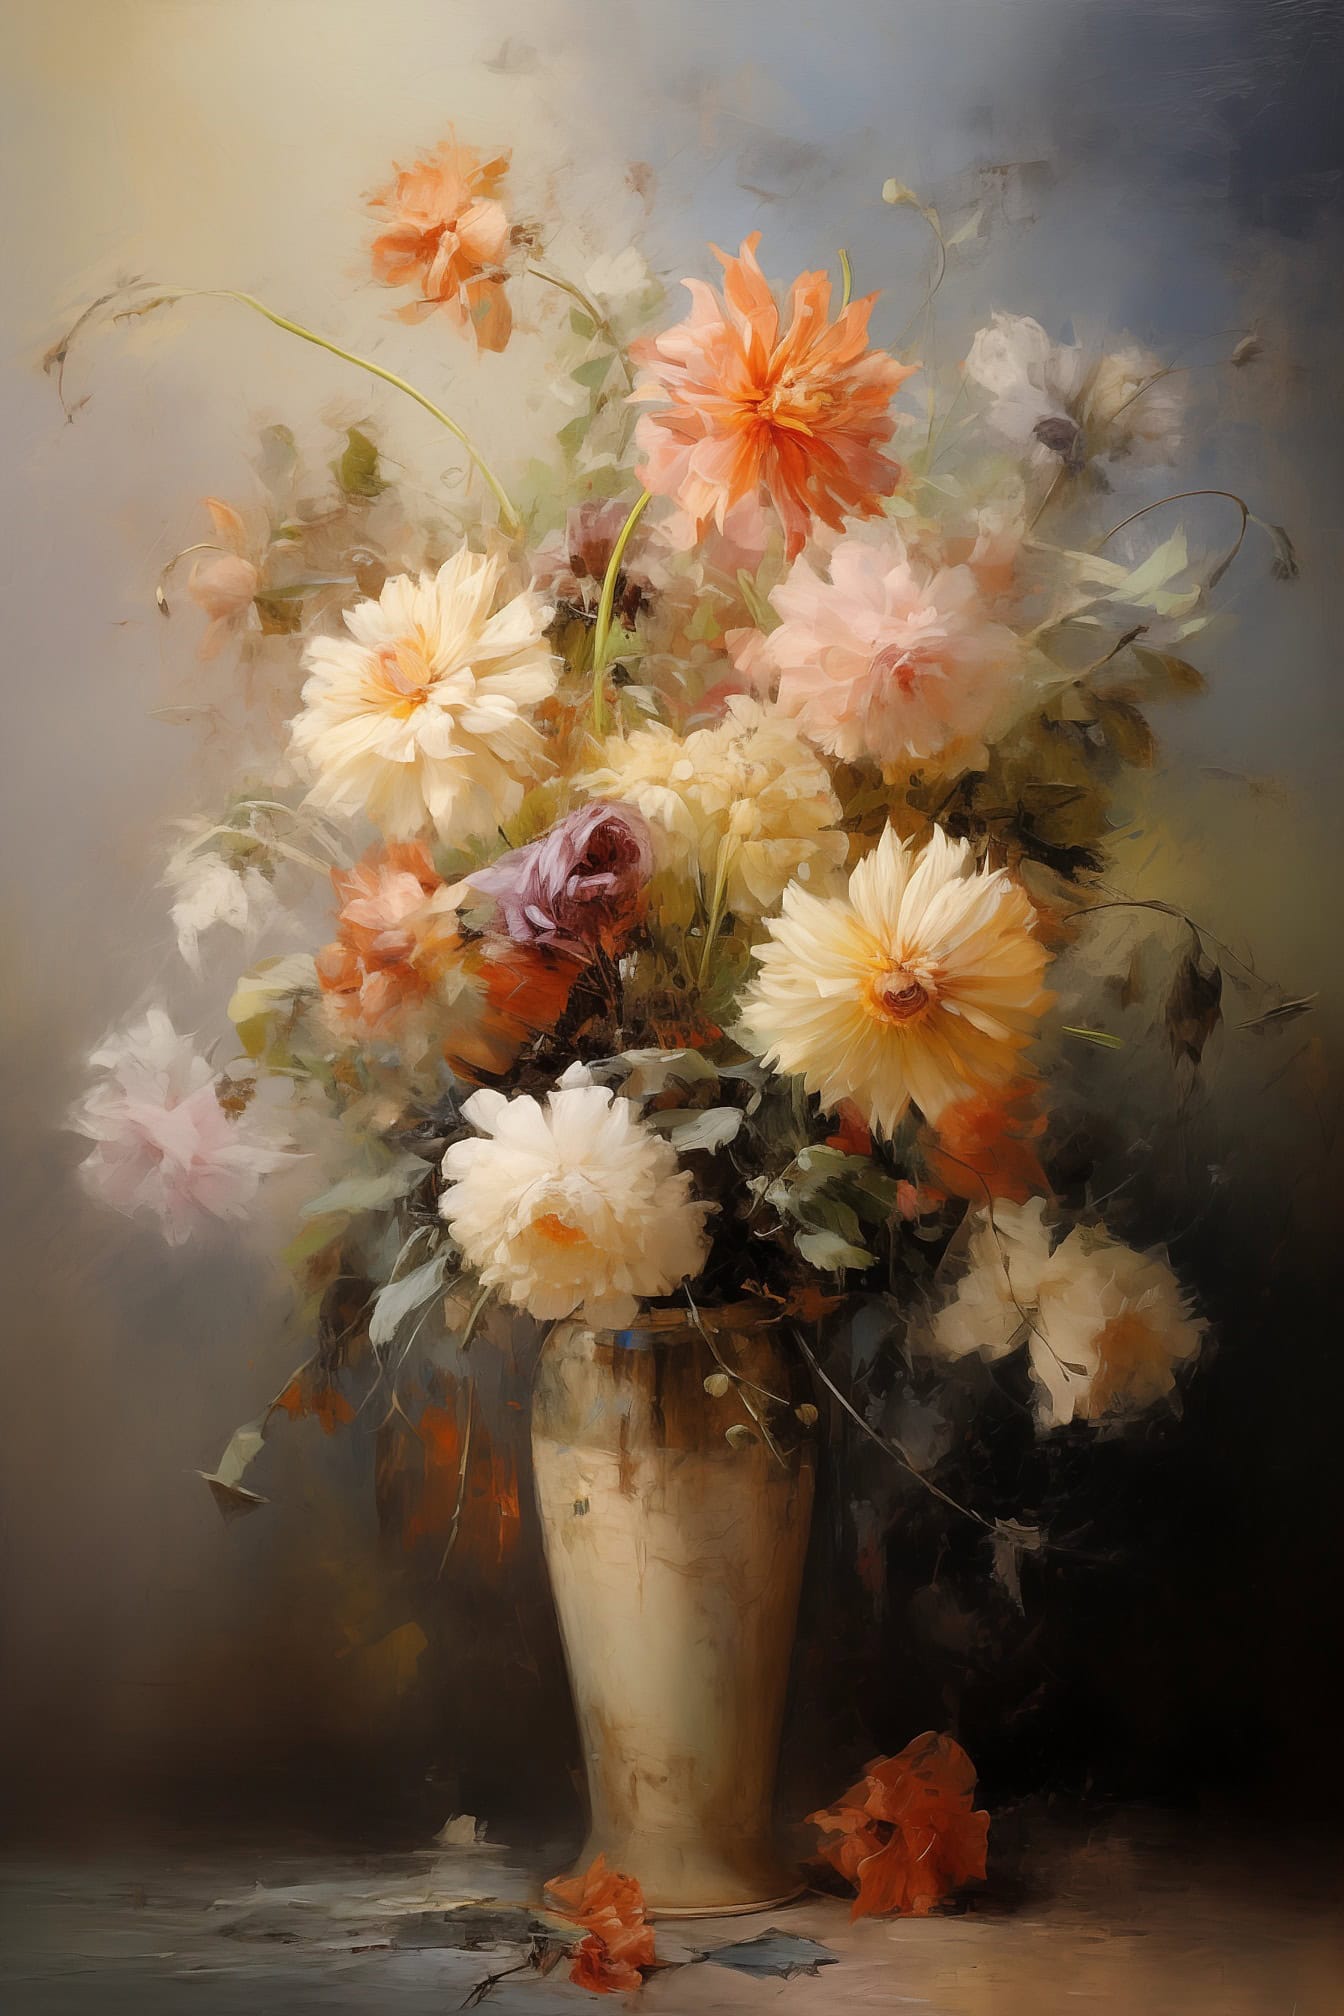 背景がぼやけた床の上の花瓶にパステルカラーの白とオレンジがかった野の花の油絵